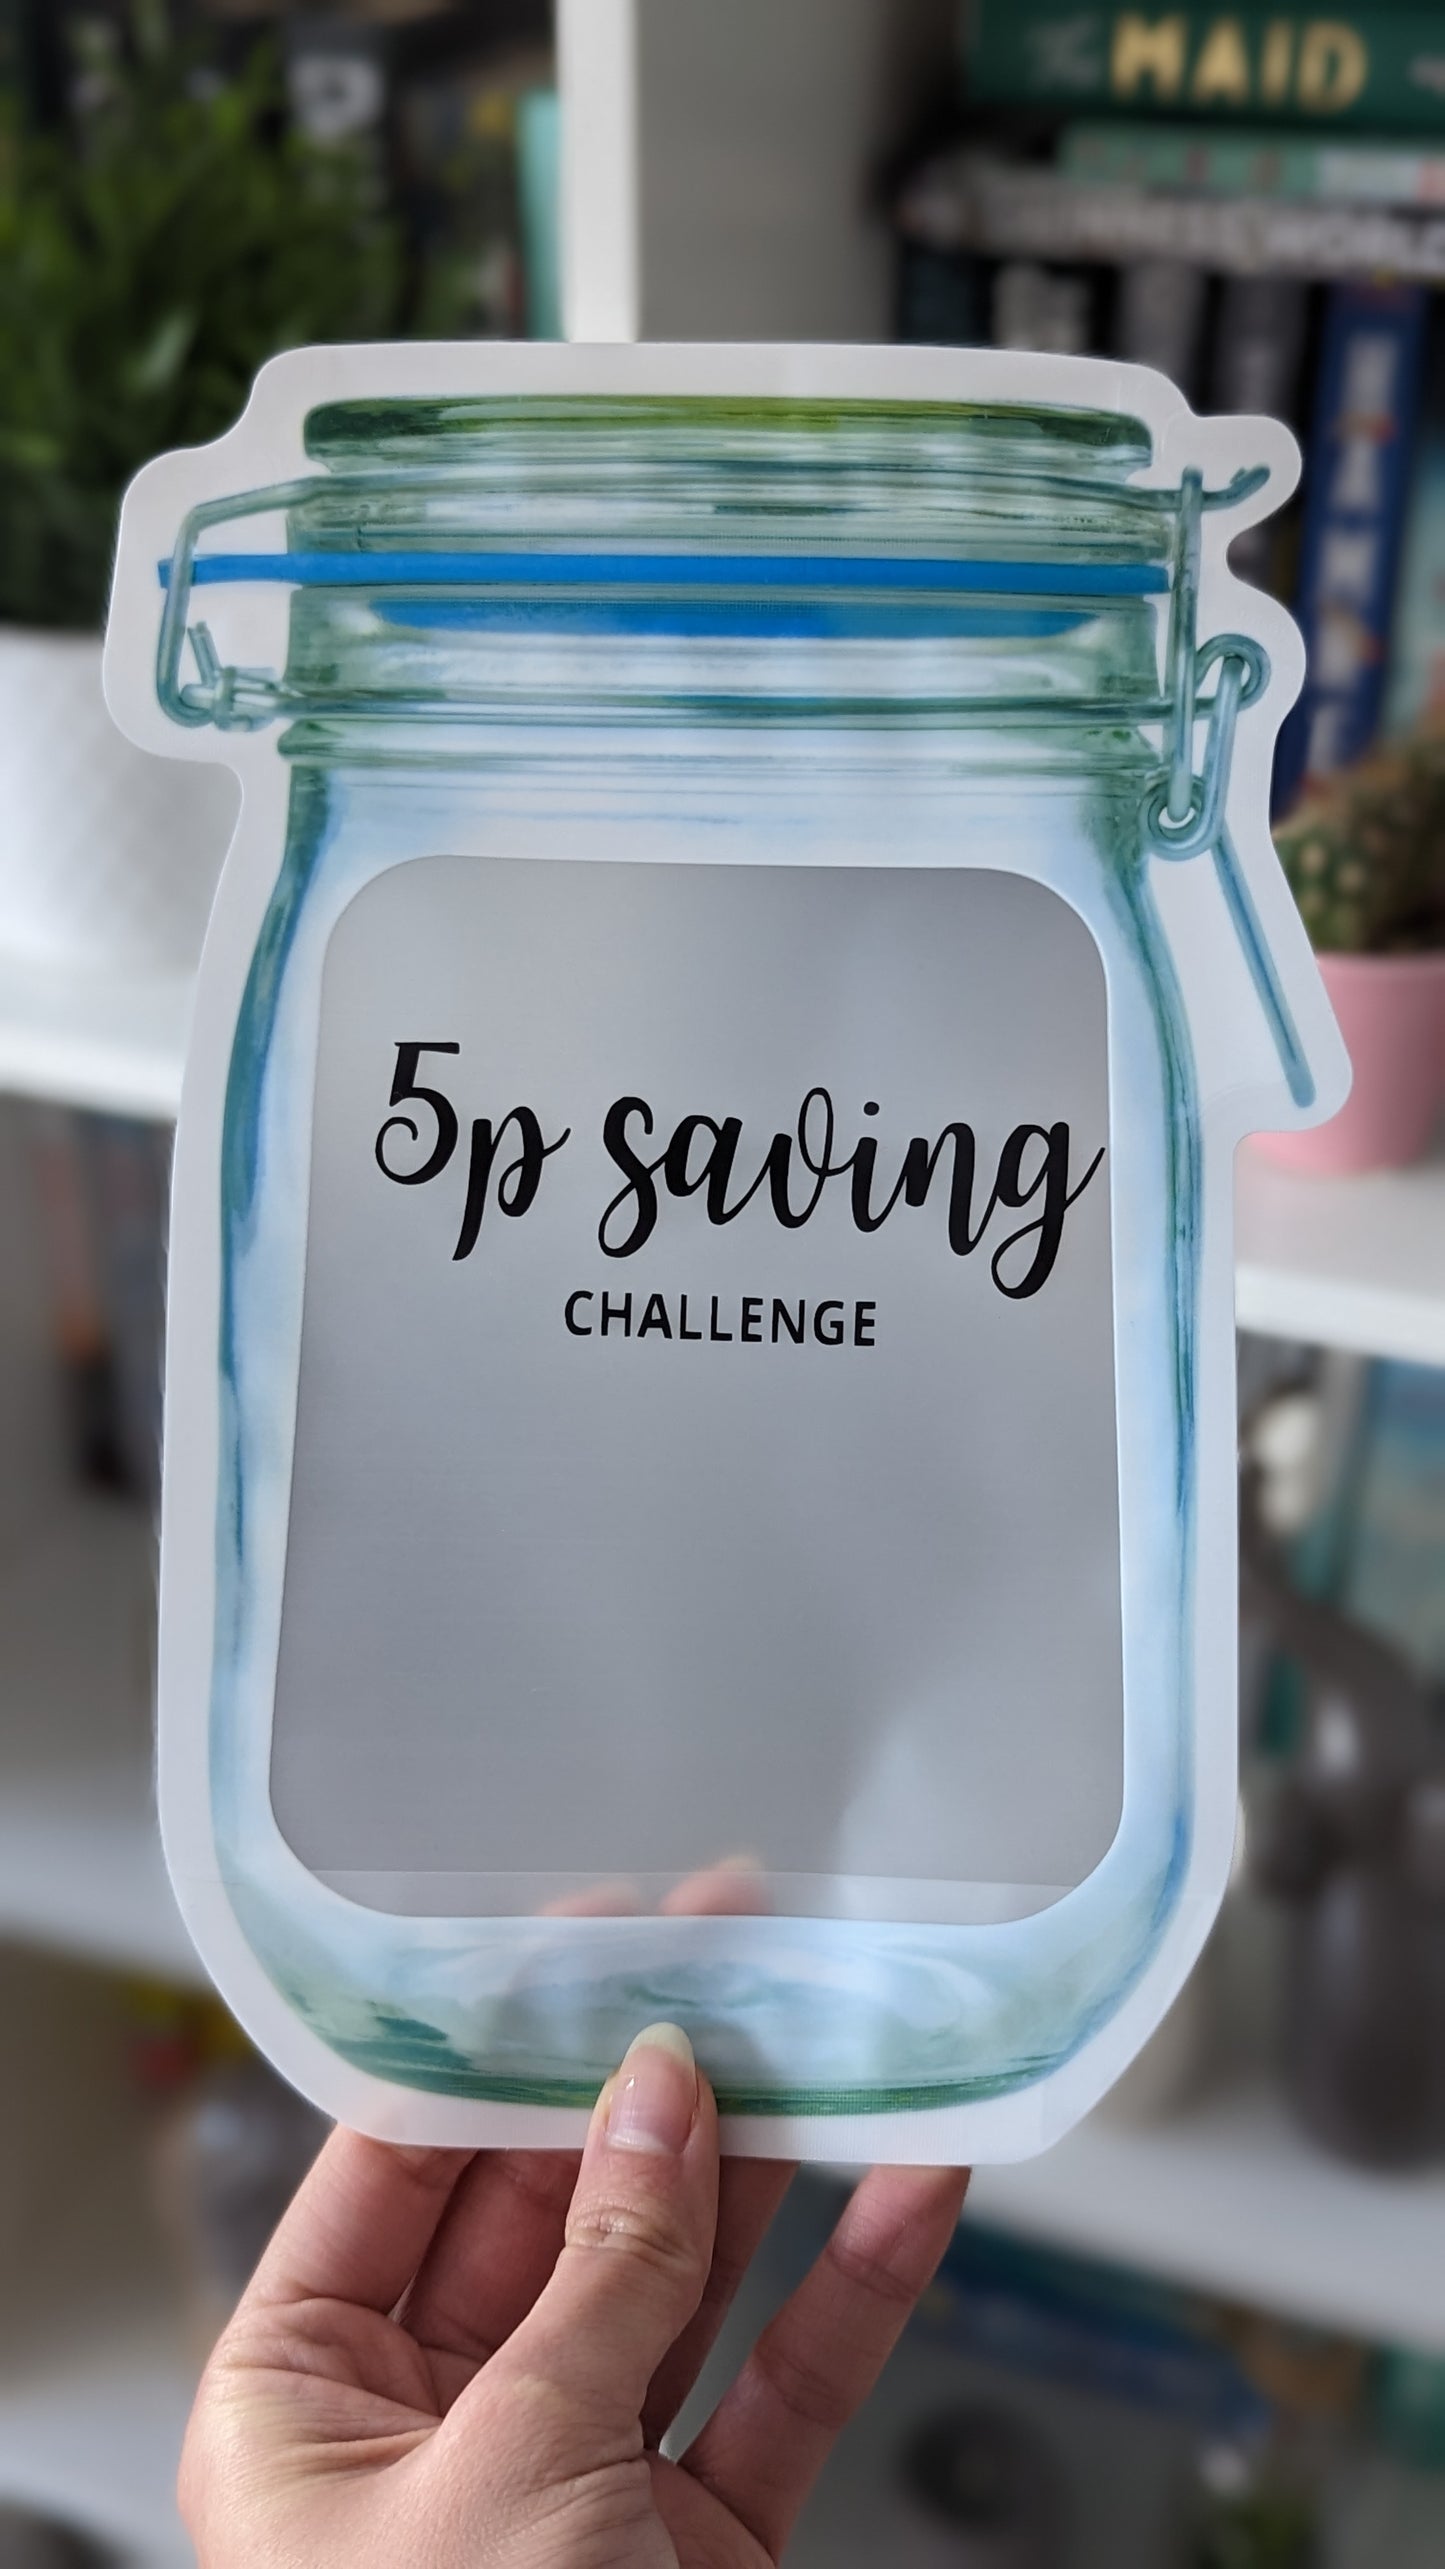 Coin Saving Jars / 2p and 5p Saving Challenge